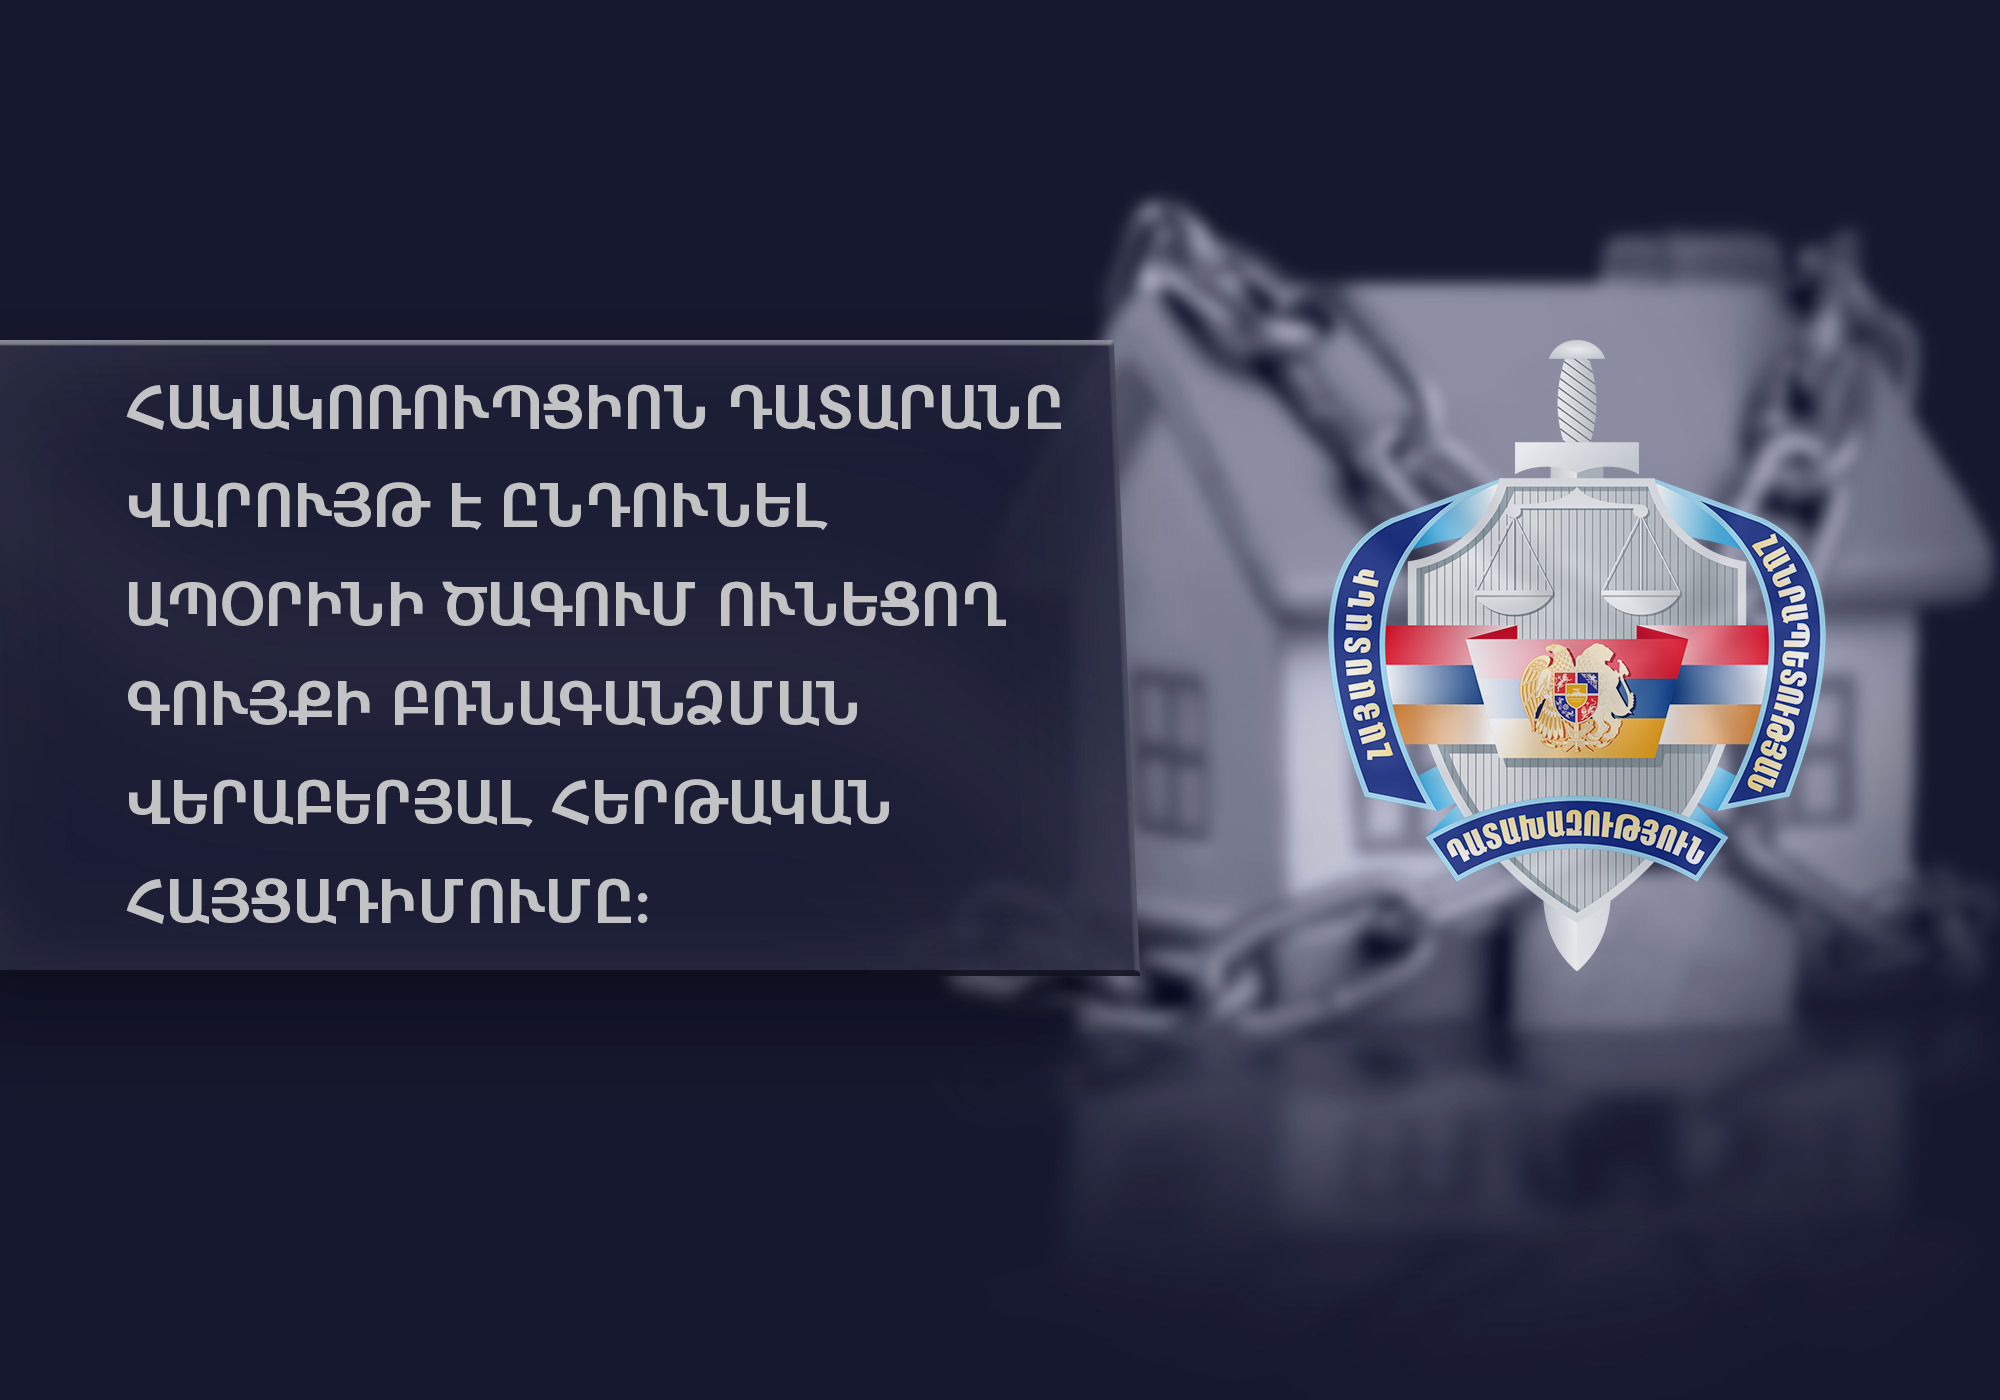 Դատախազությունը պահանջում է բժշկից բռնագանձել ապօրինի ծագմամբ 4 անշարժ գույք Երևանում, 8 շարժական գույք և 386 մլն դրամ